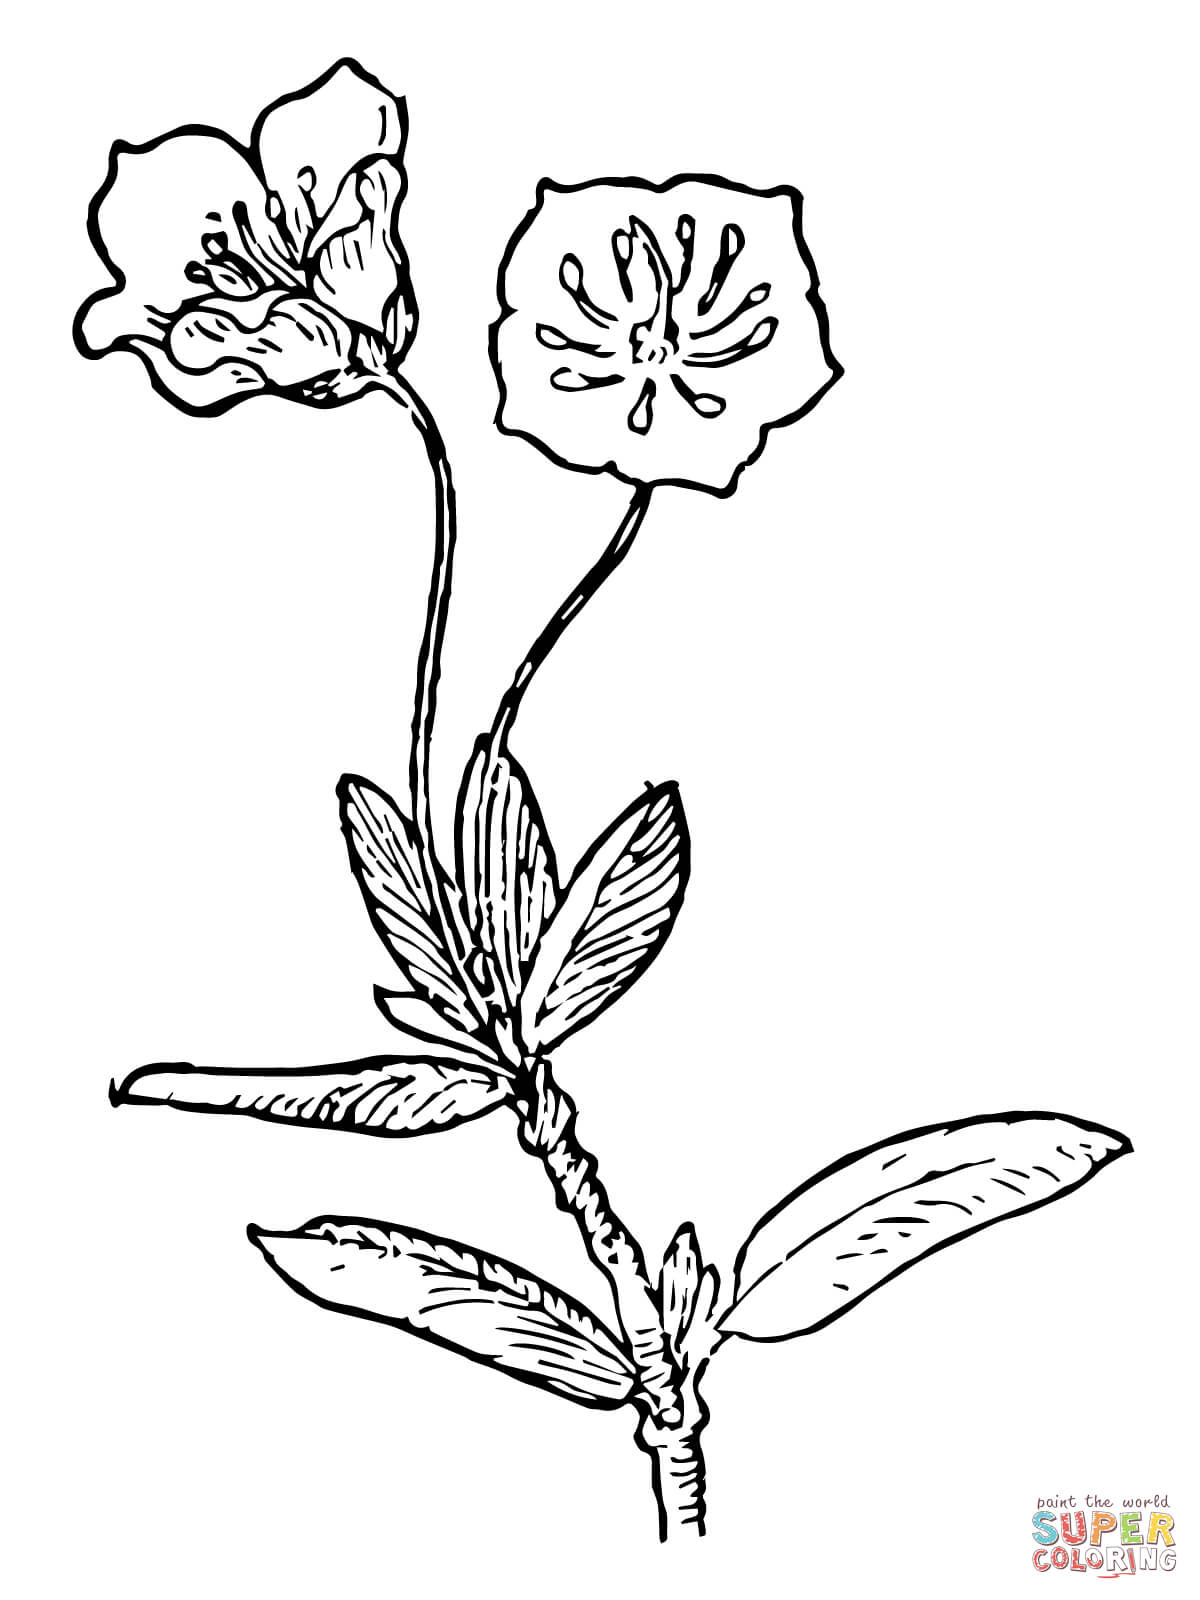 Kalmia Microphylla ou Laurier des marais de Laurel